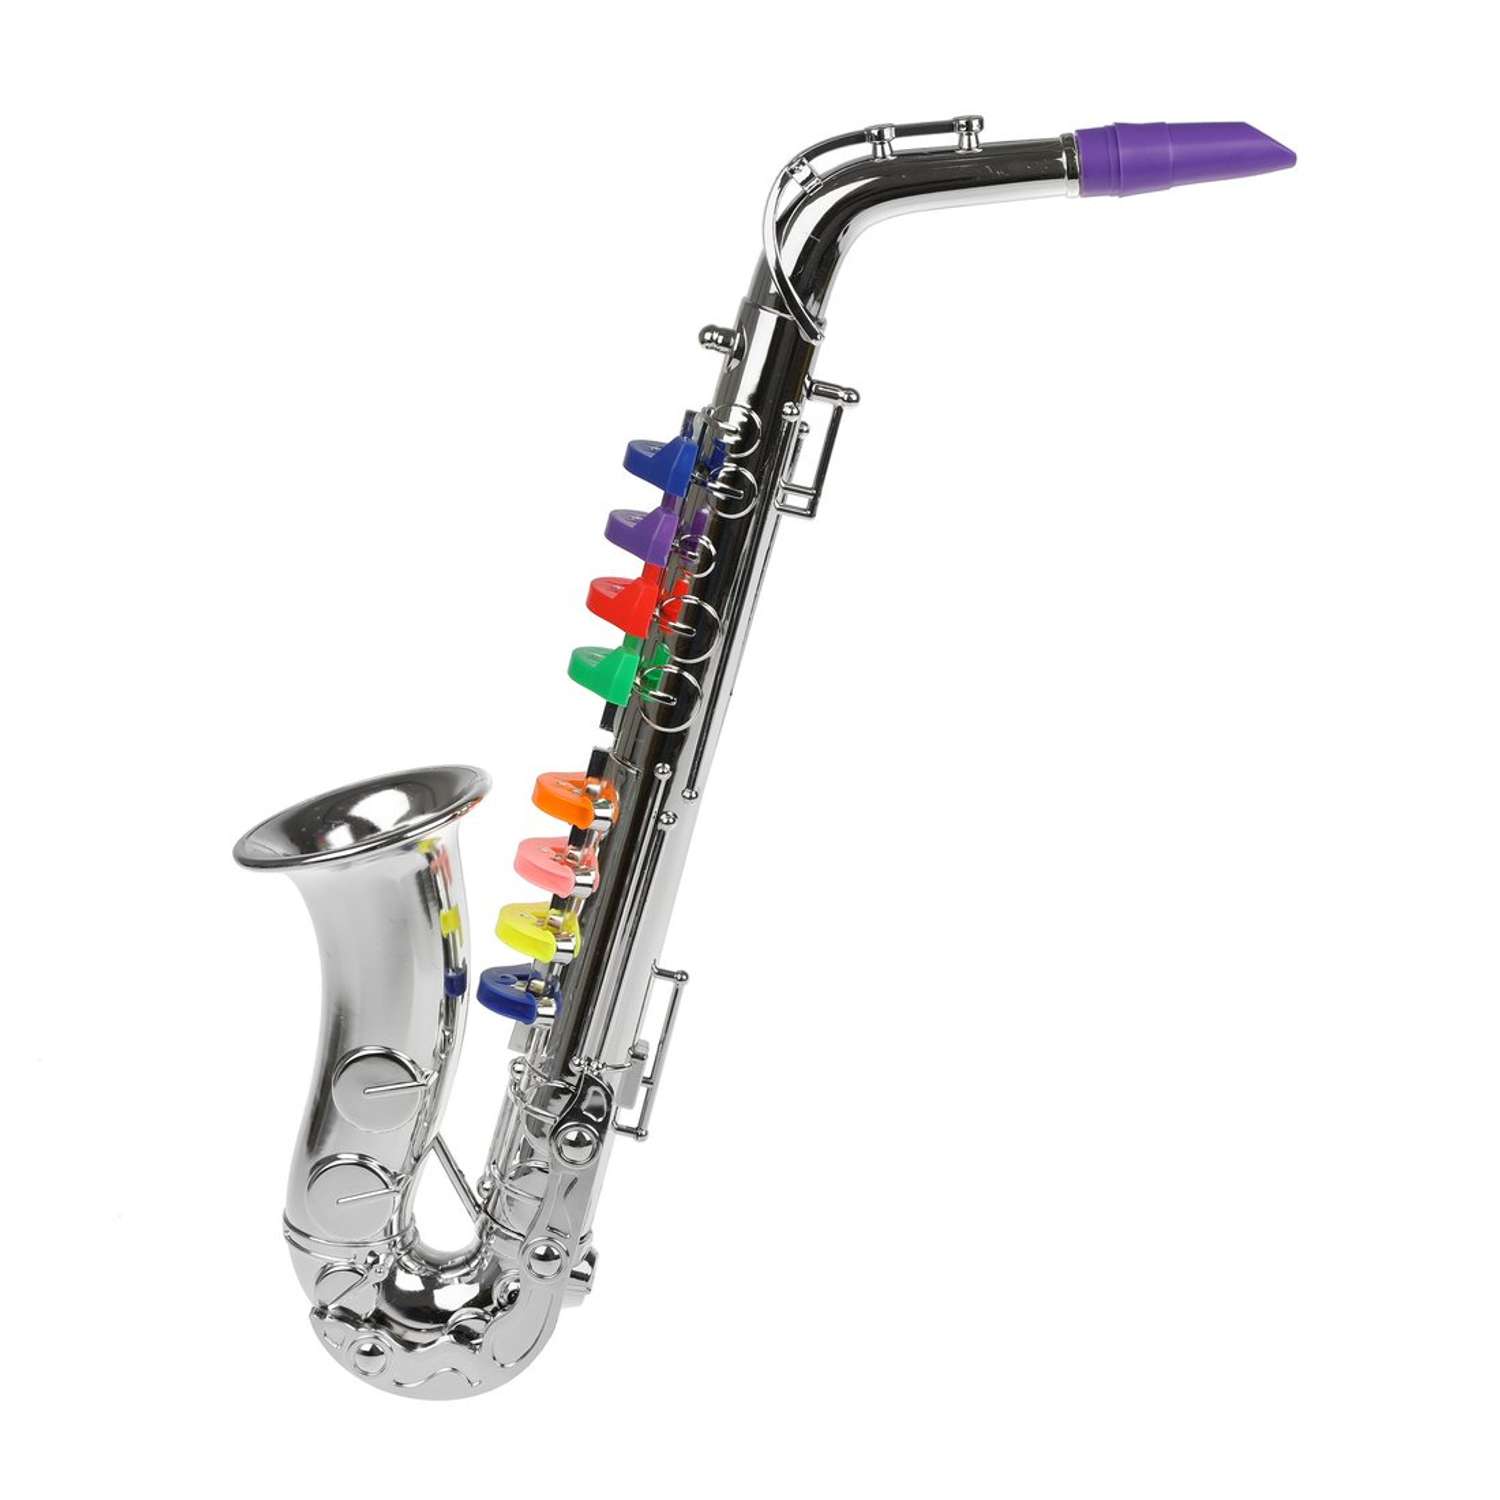 Саксофон детский Наша Игрушка развивающий музыкальный инструмент - фото 2